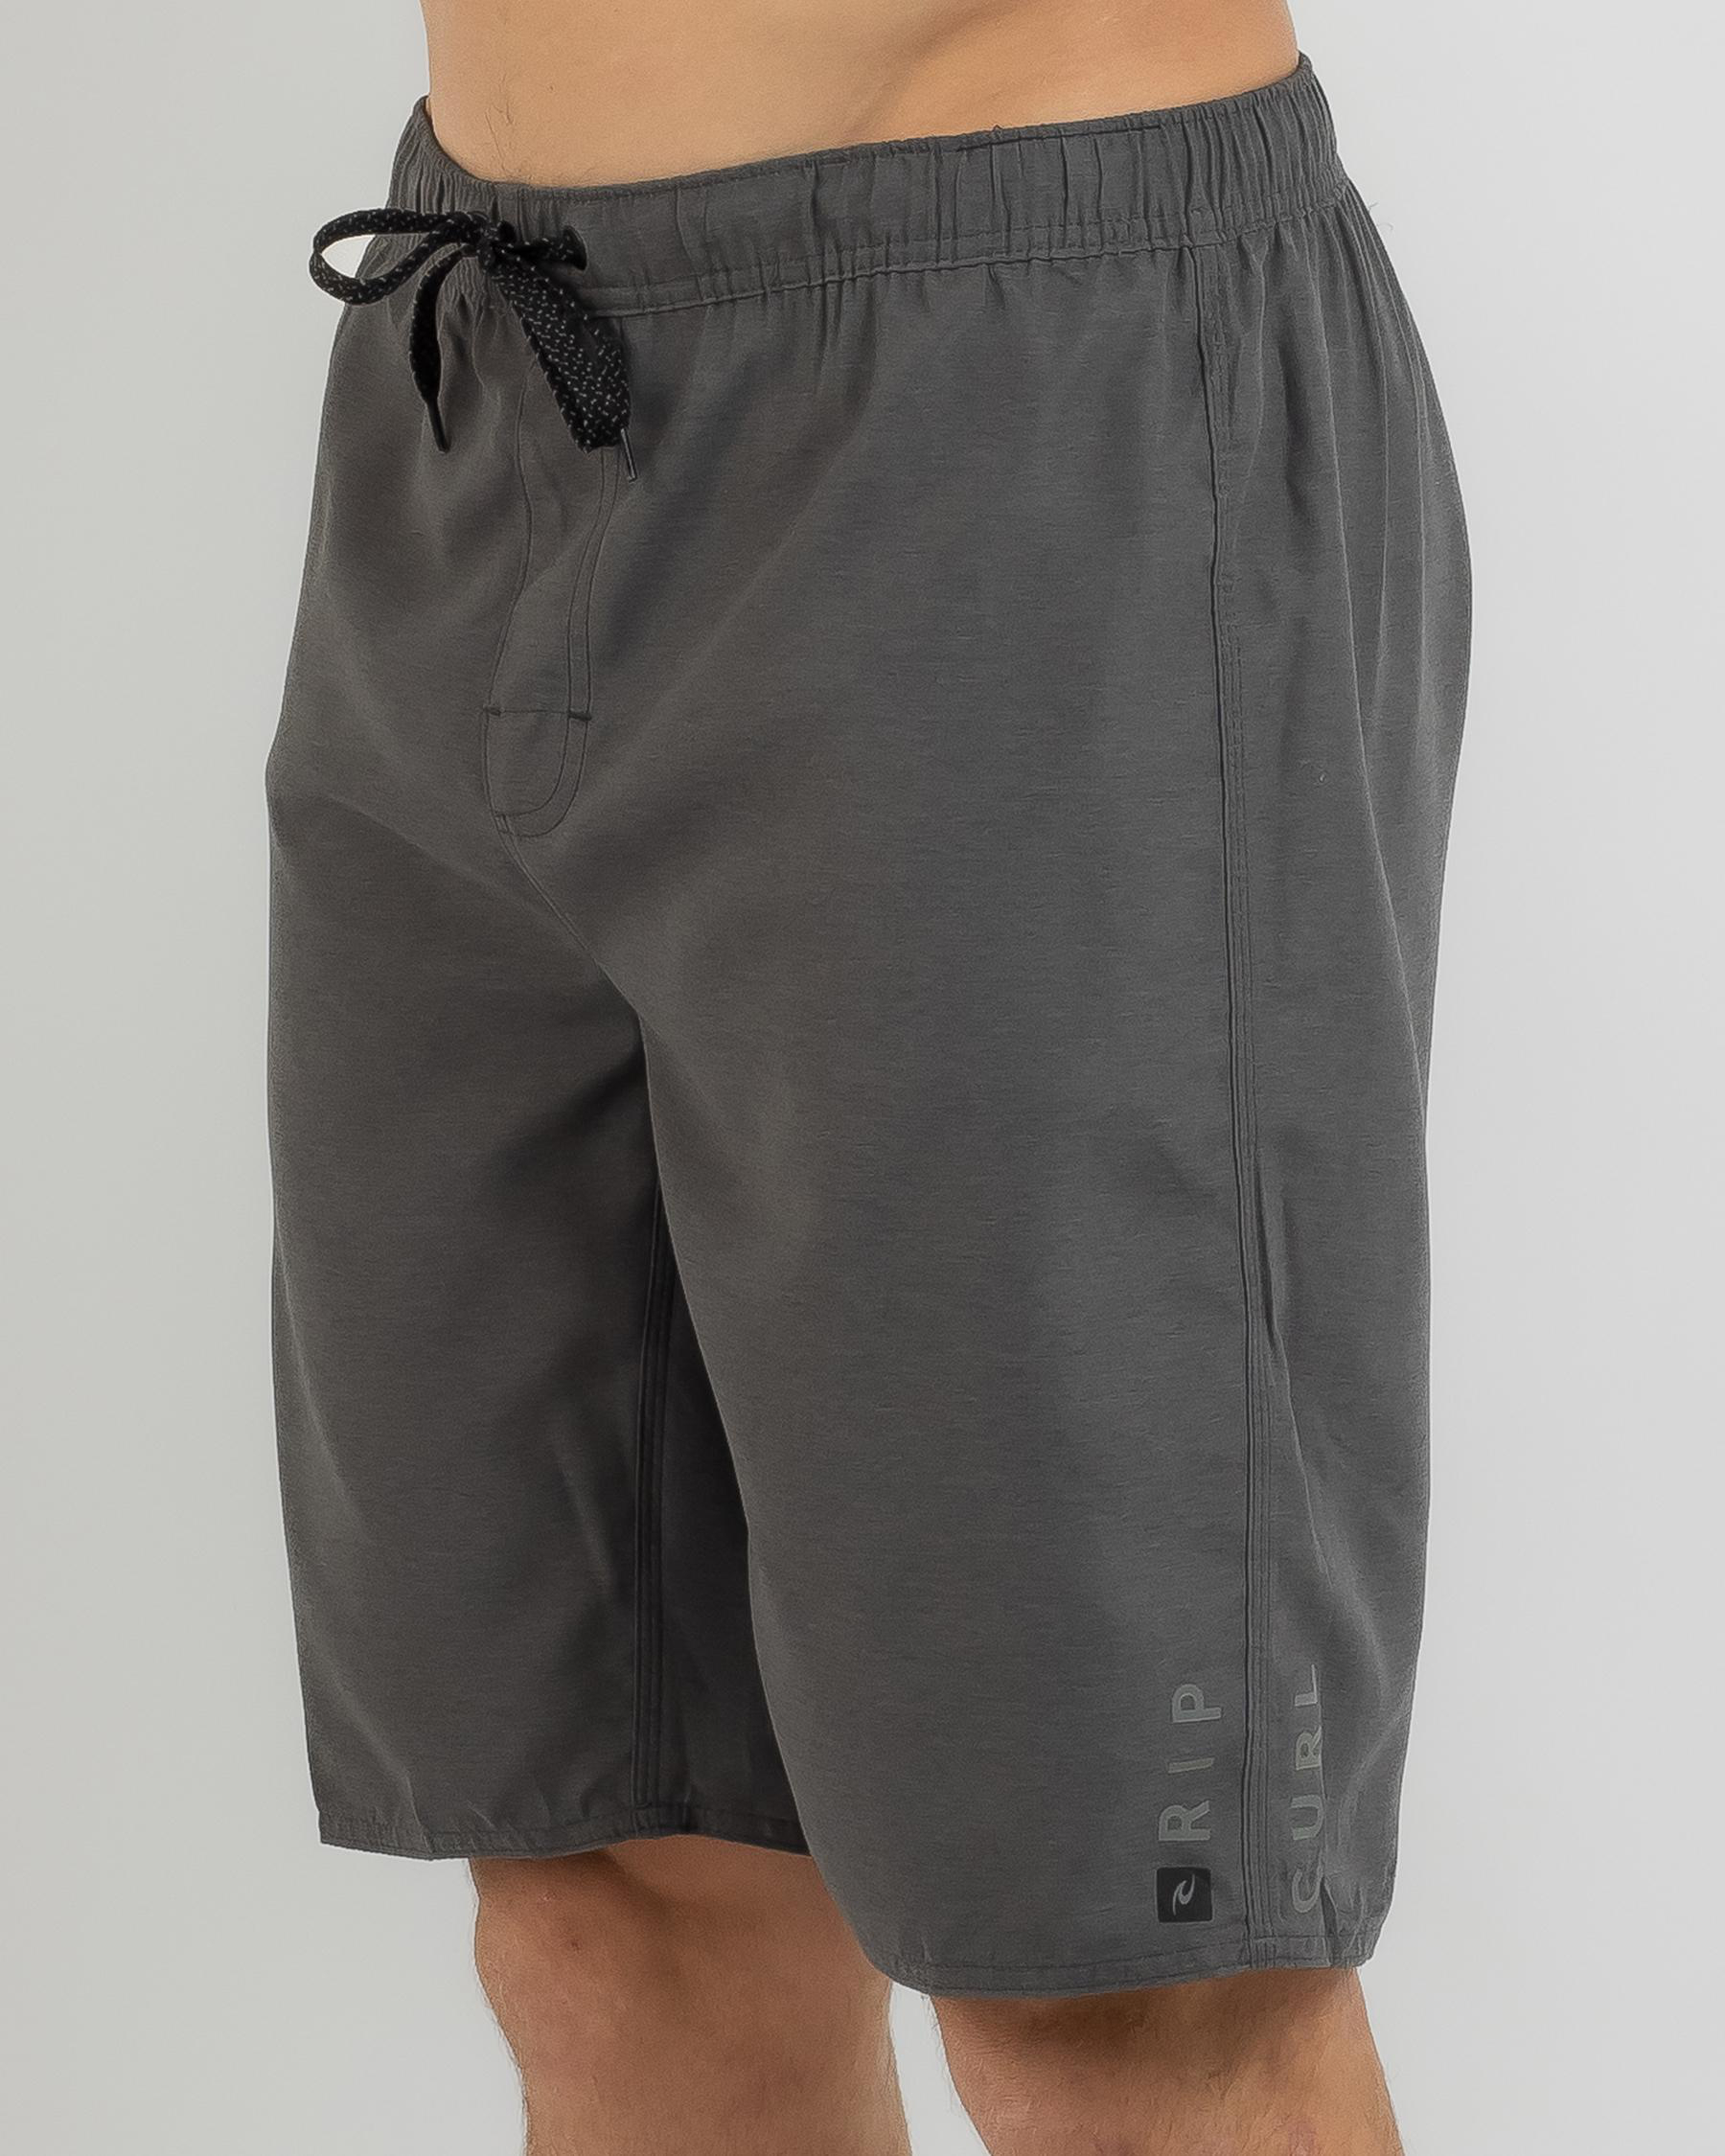 Rip Curl Dawn Patrol Elastic Fit Shorts In Black - Fast Shipping & Easy ...